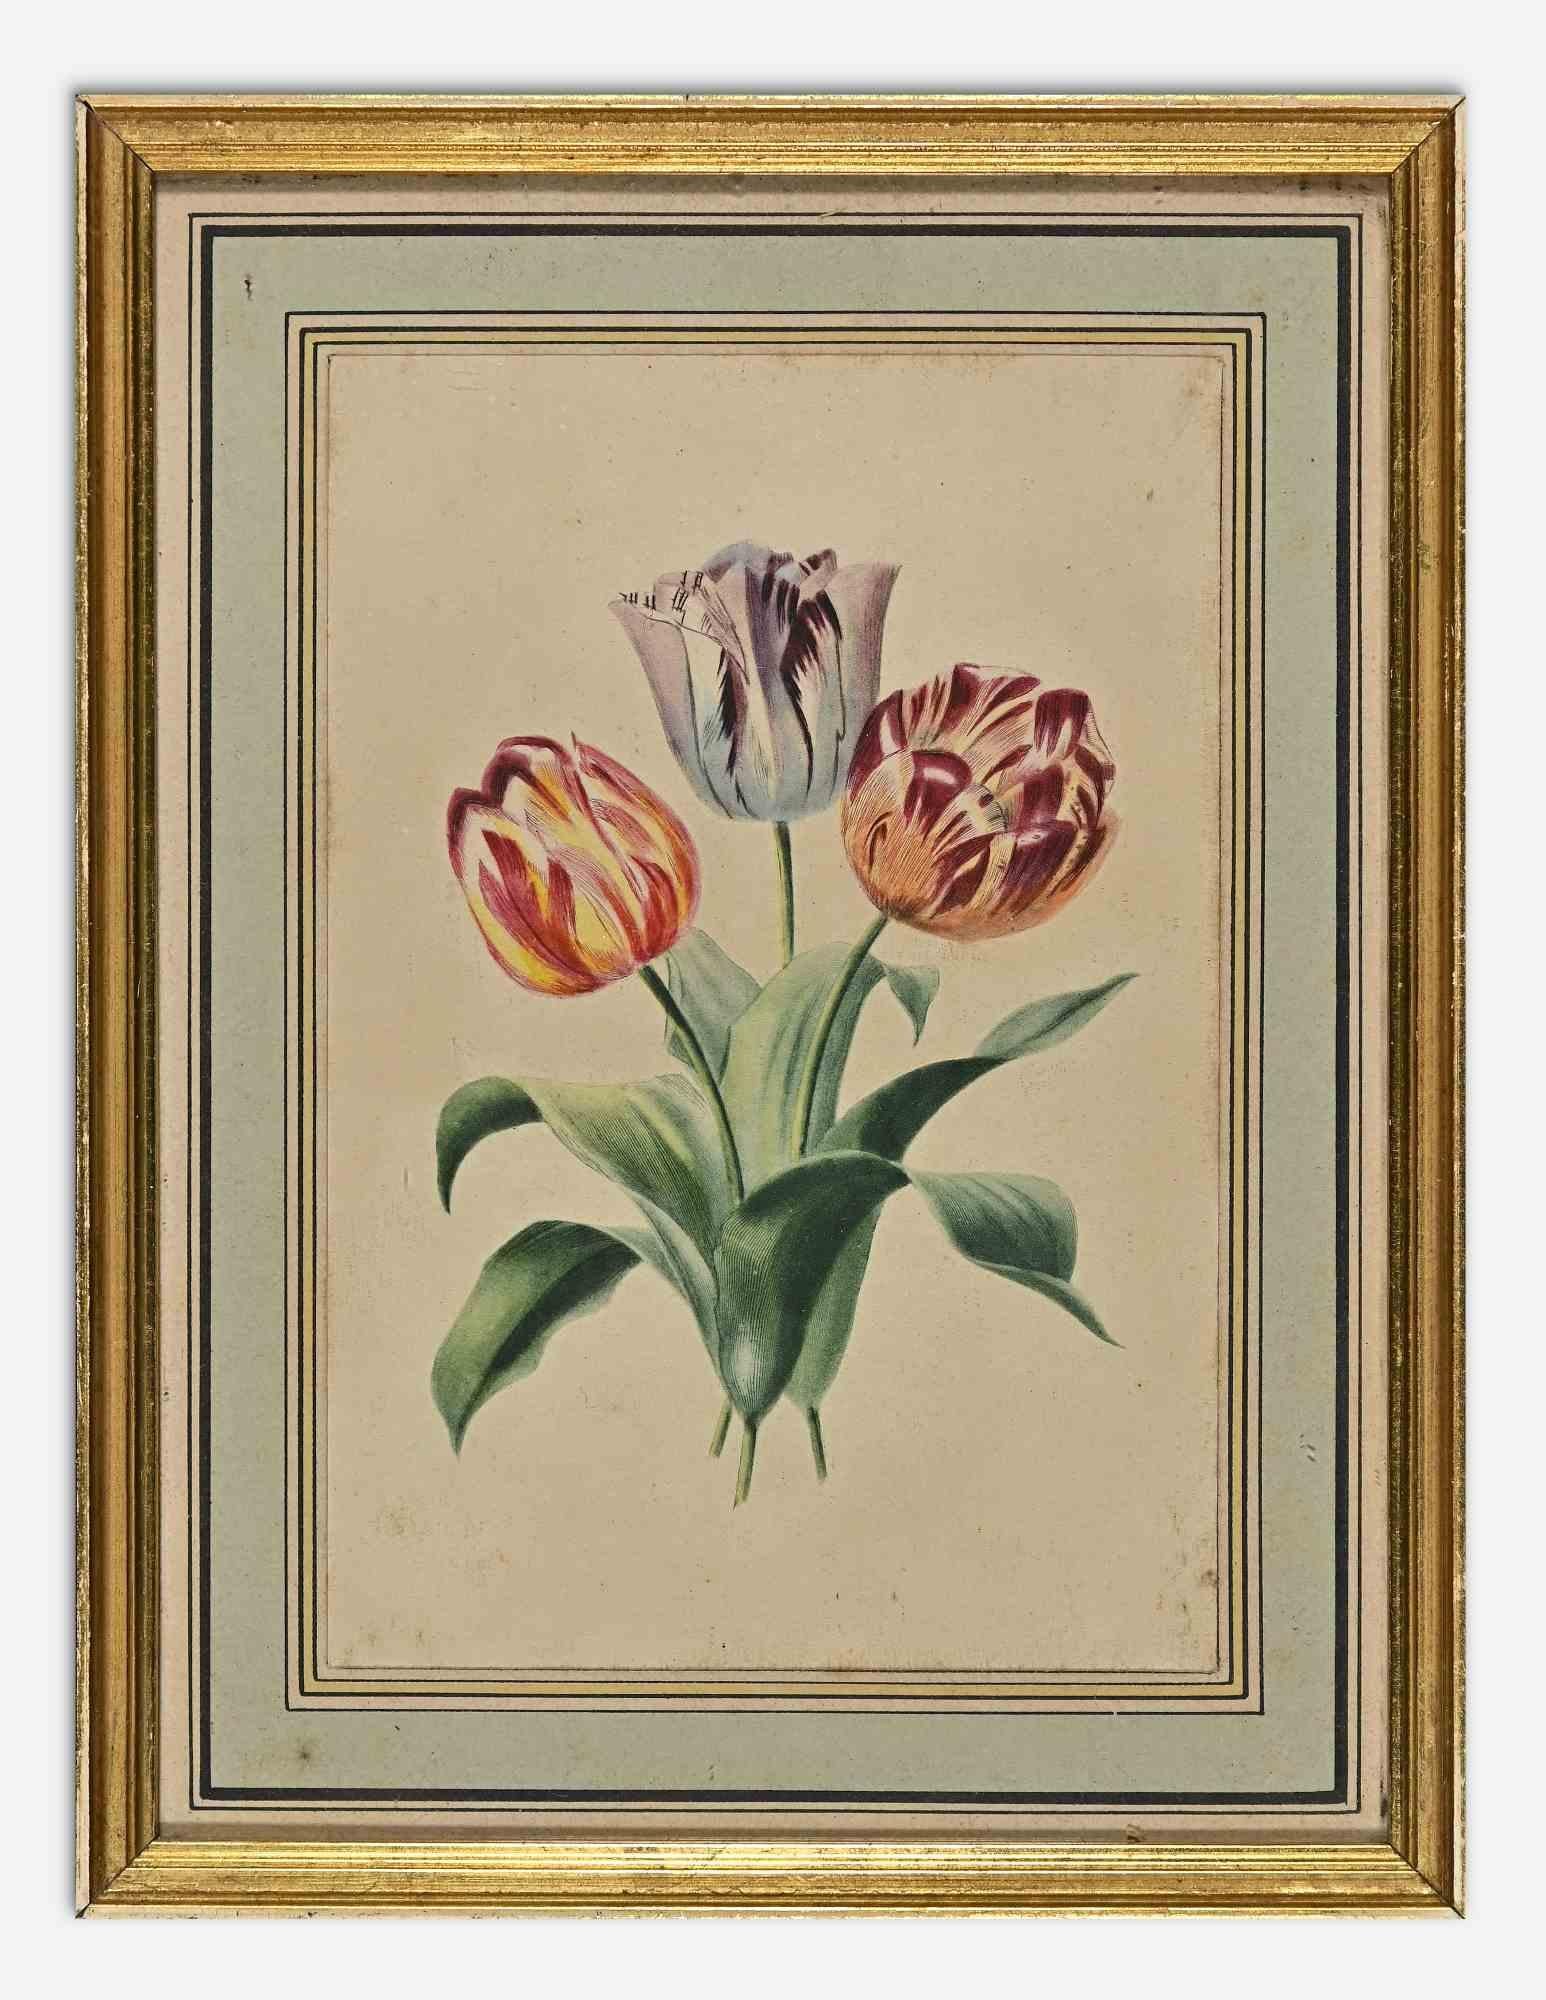 Die Tulpe ist ein modernes Kunstwerk von Edouard Maubert aus dem 19. Jahrhundert.

Handkolorierte Radierung.

Einschließlich Rahmen.

Guter Zustand (Vergilbung des Papiers).